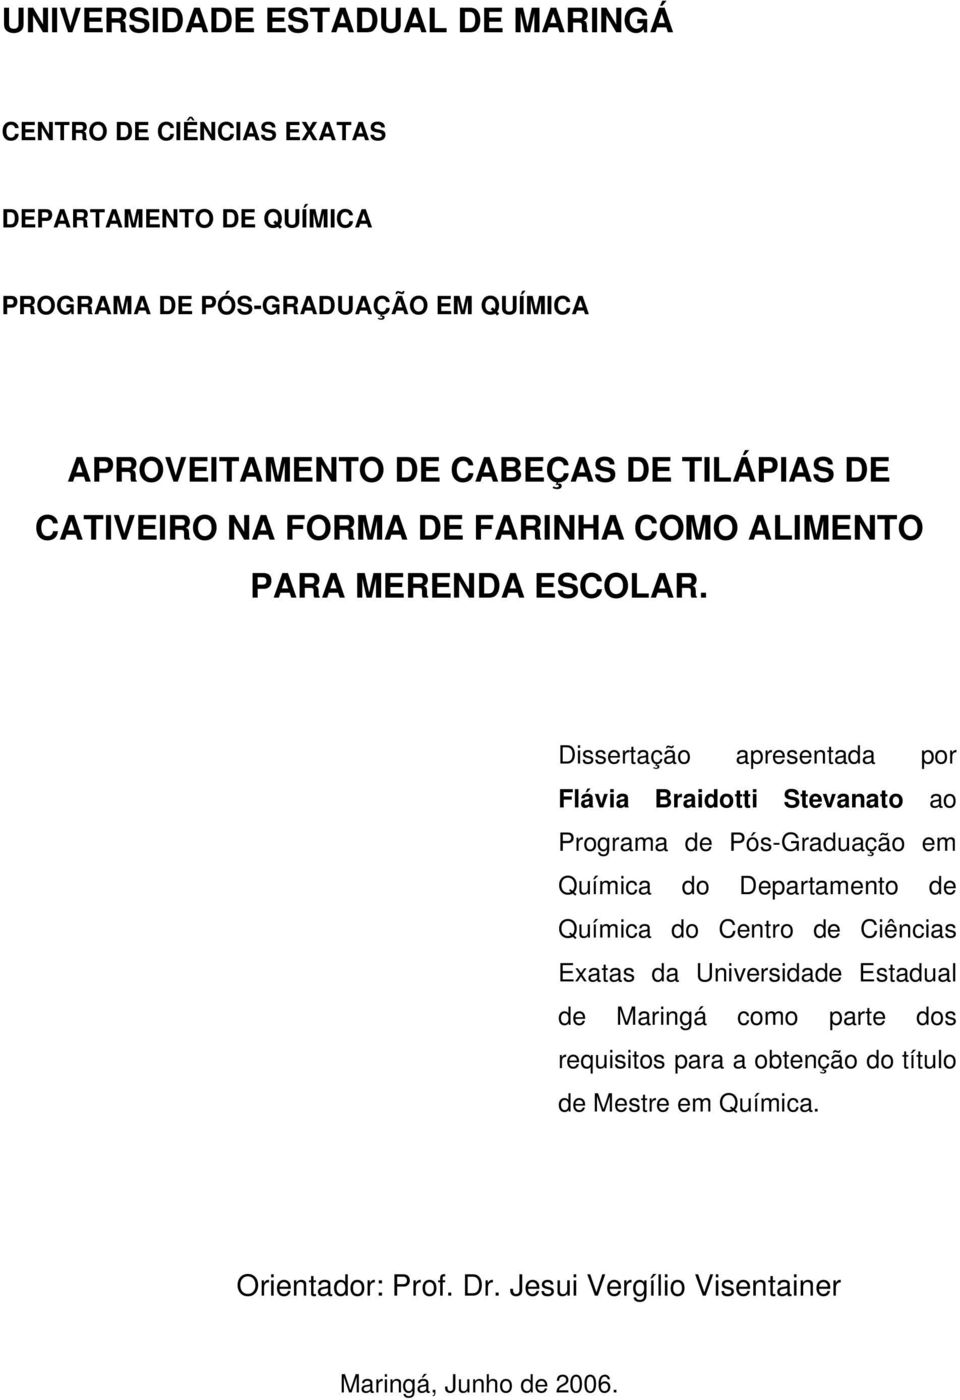 Dissertação apresentada por Flávia Braidotti Stevanato ao Programa de Pós-Graduação em Química do Departamento de Química do Centro de